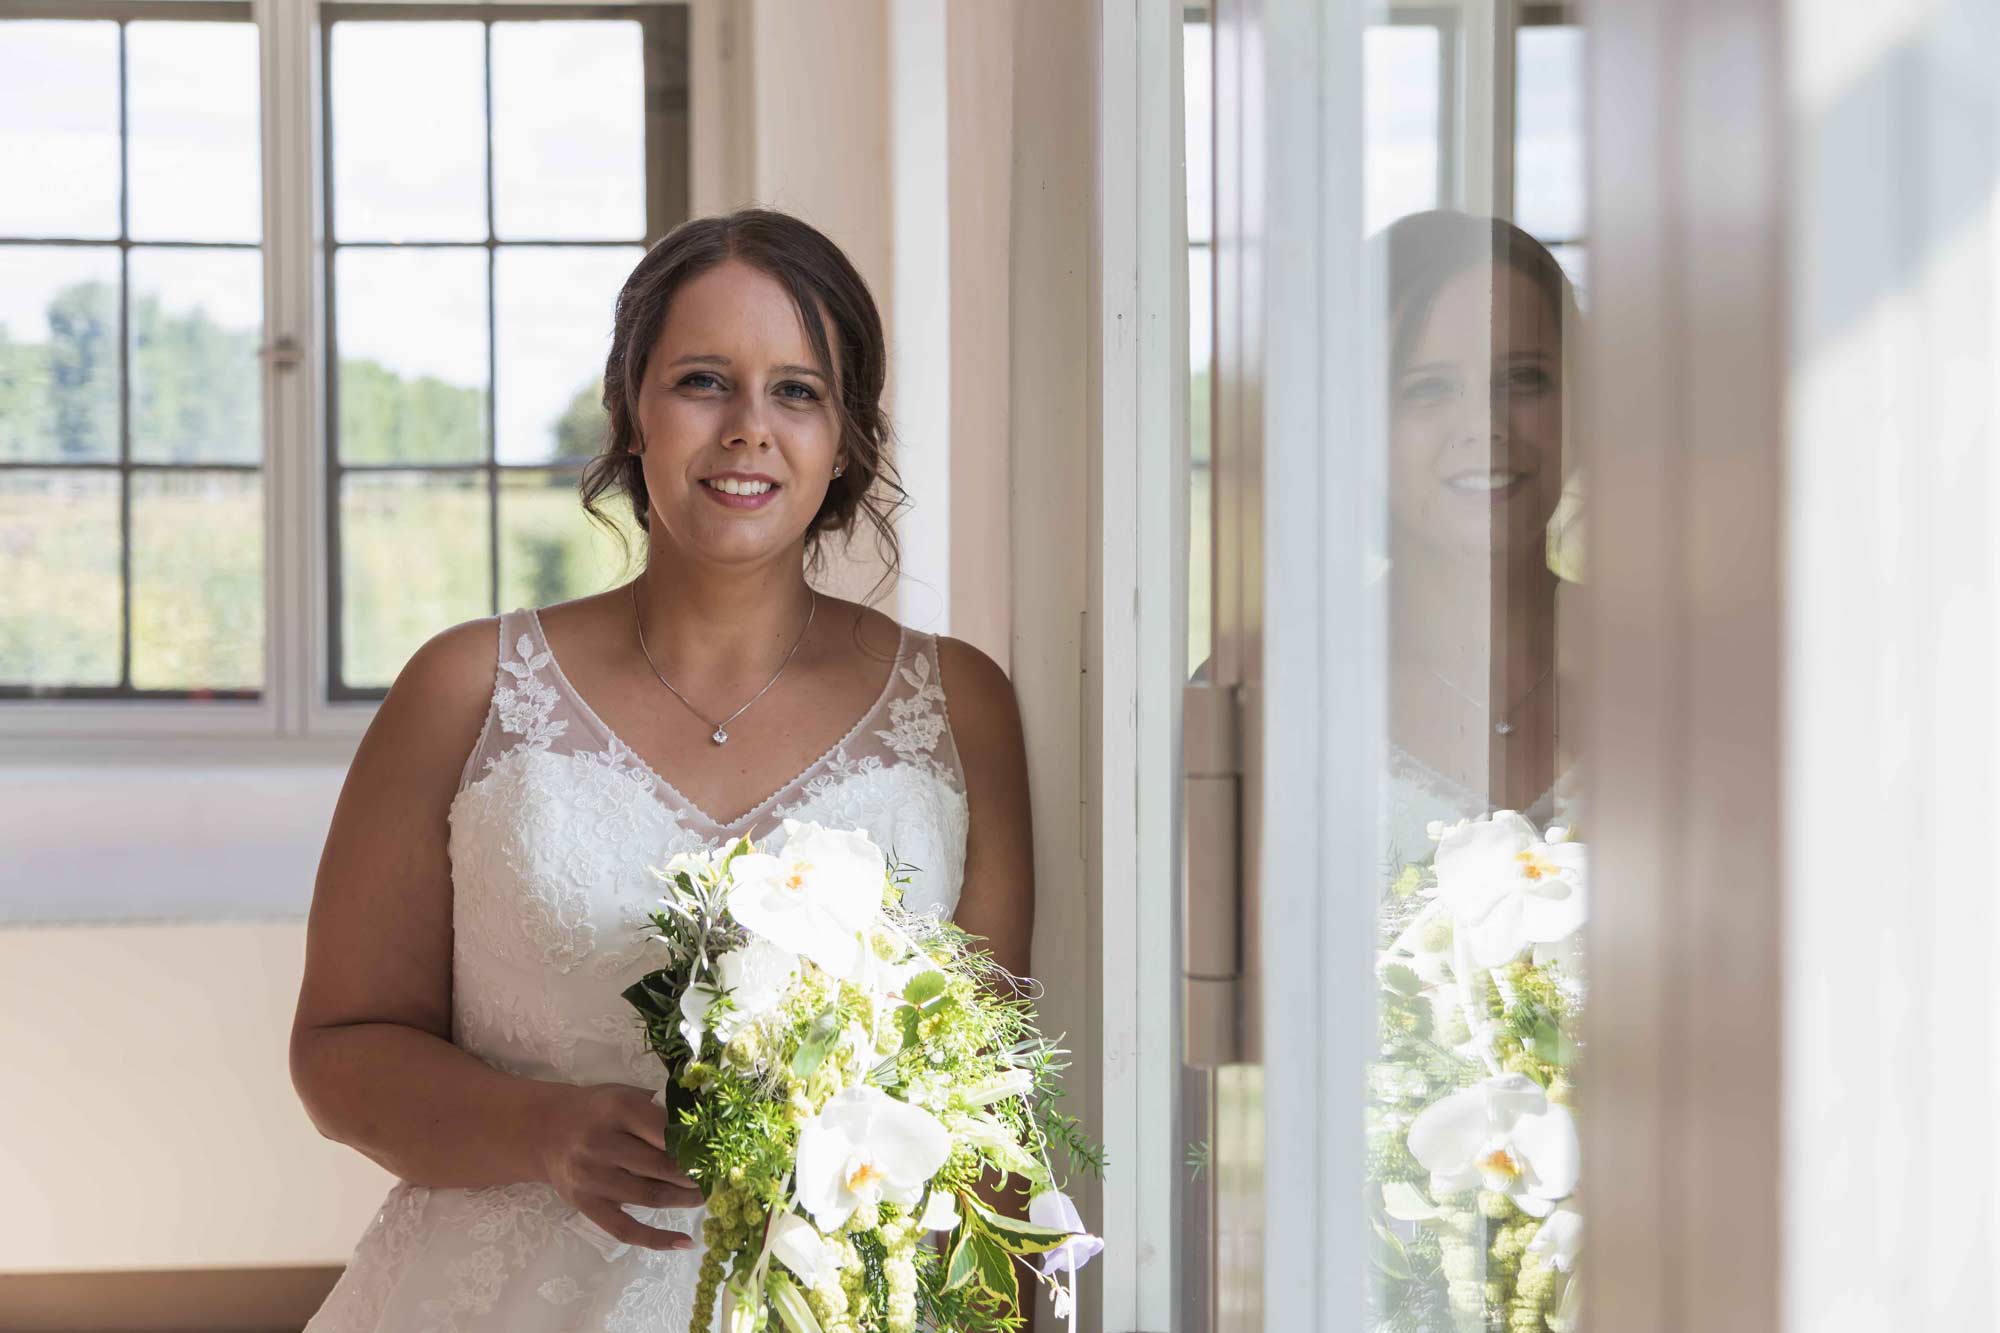 ein professioneller Hochzeitsfotograf aus Freiberg hat dieses schöne Foto von einer Braut gemacht, die gerade an einem Fenster steht mit ihrem Brautstrauß und auf die standesamtliche Vermählung wartet. Dabei schaut sie in die Kamera und lächelt.